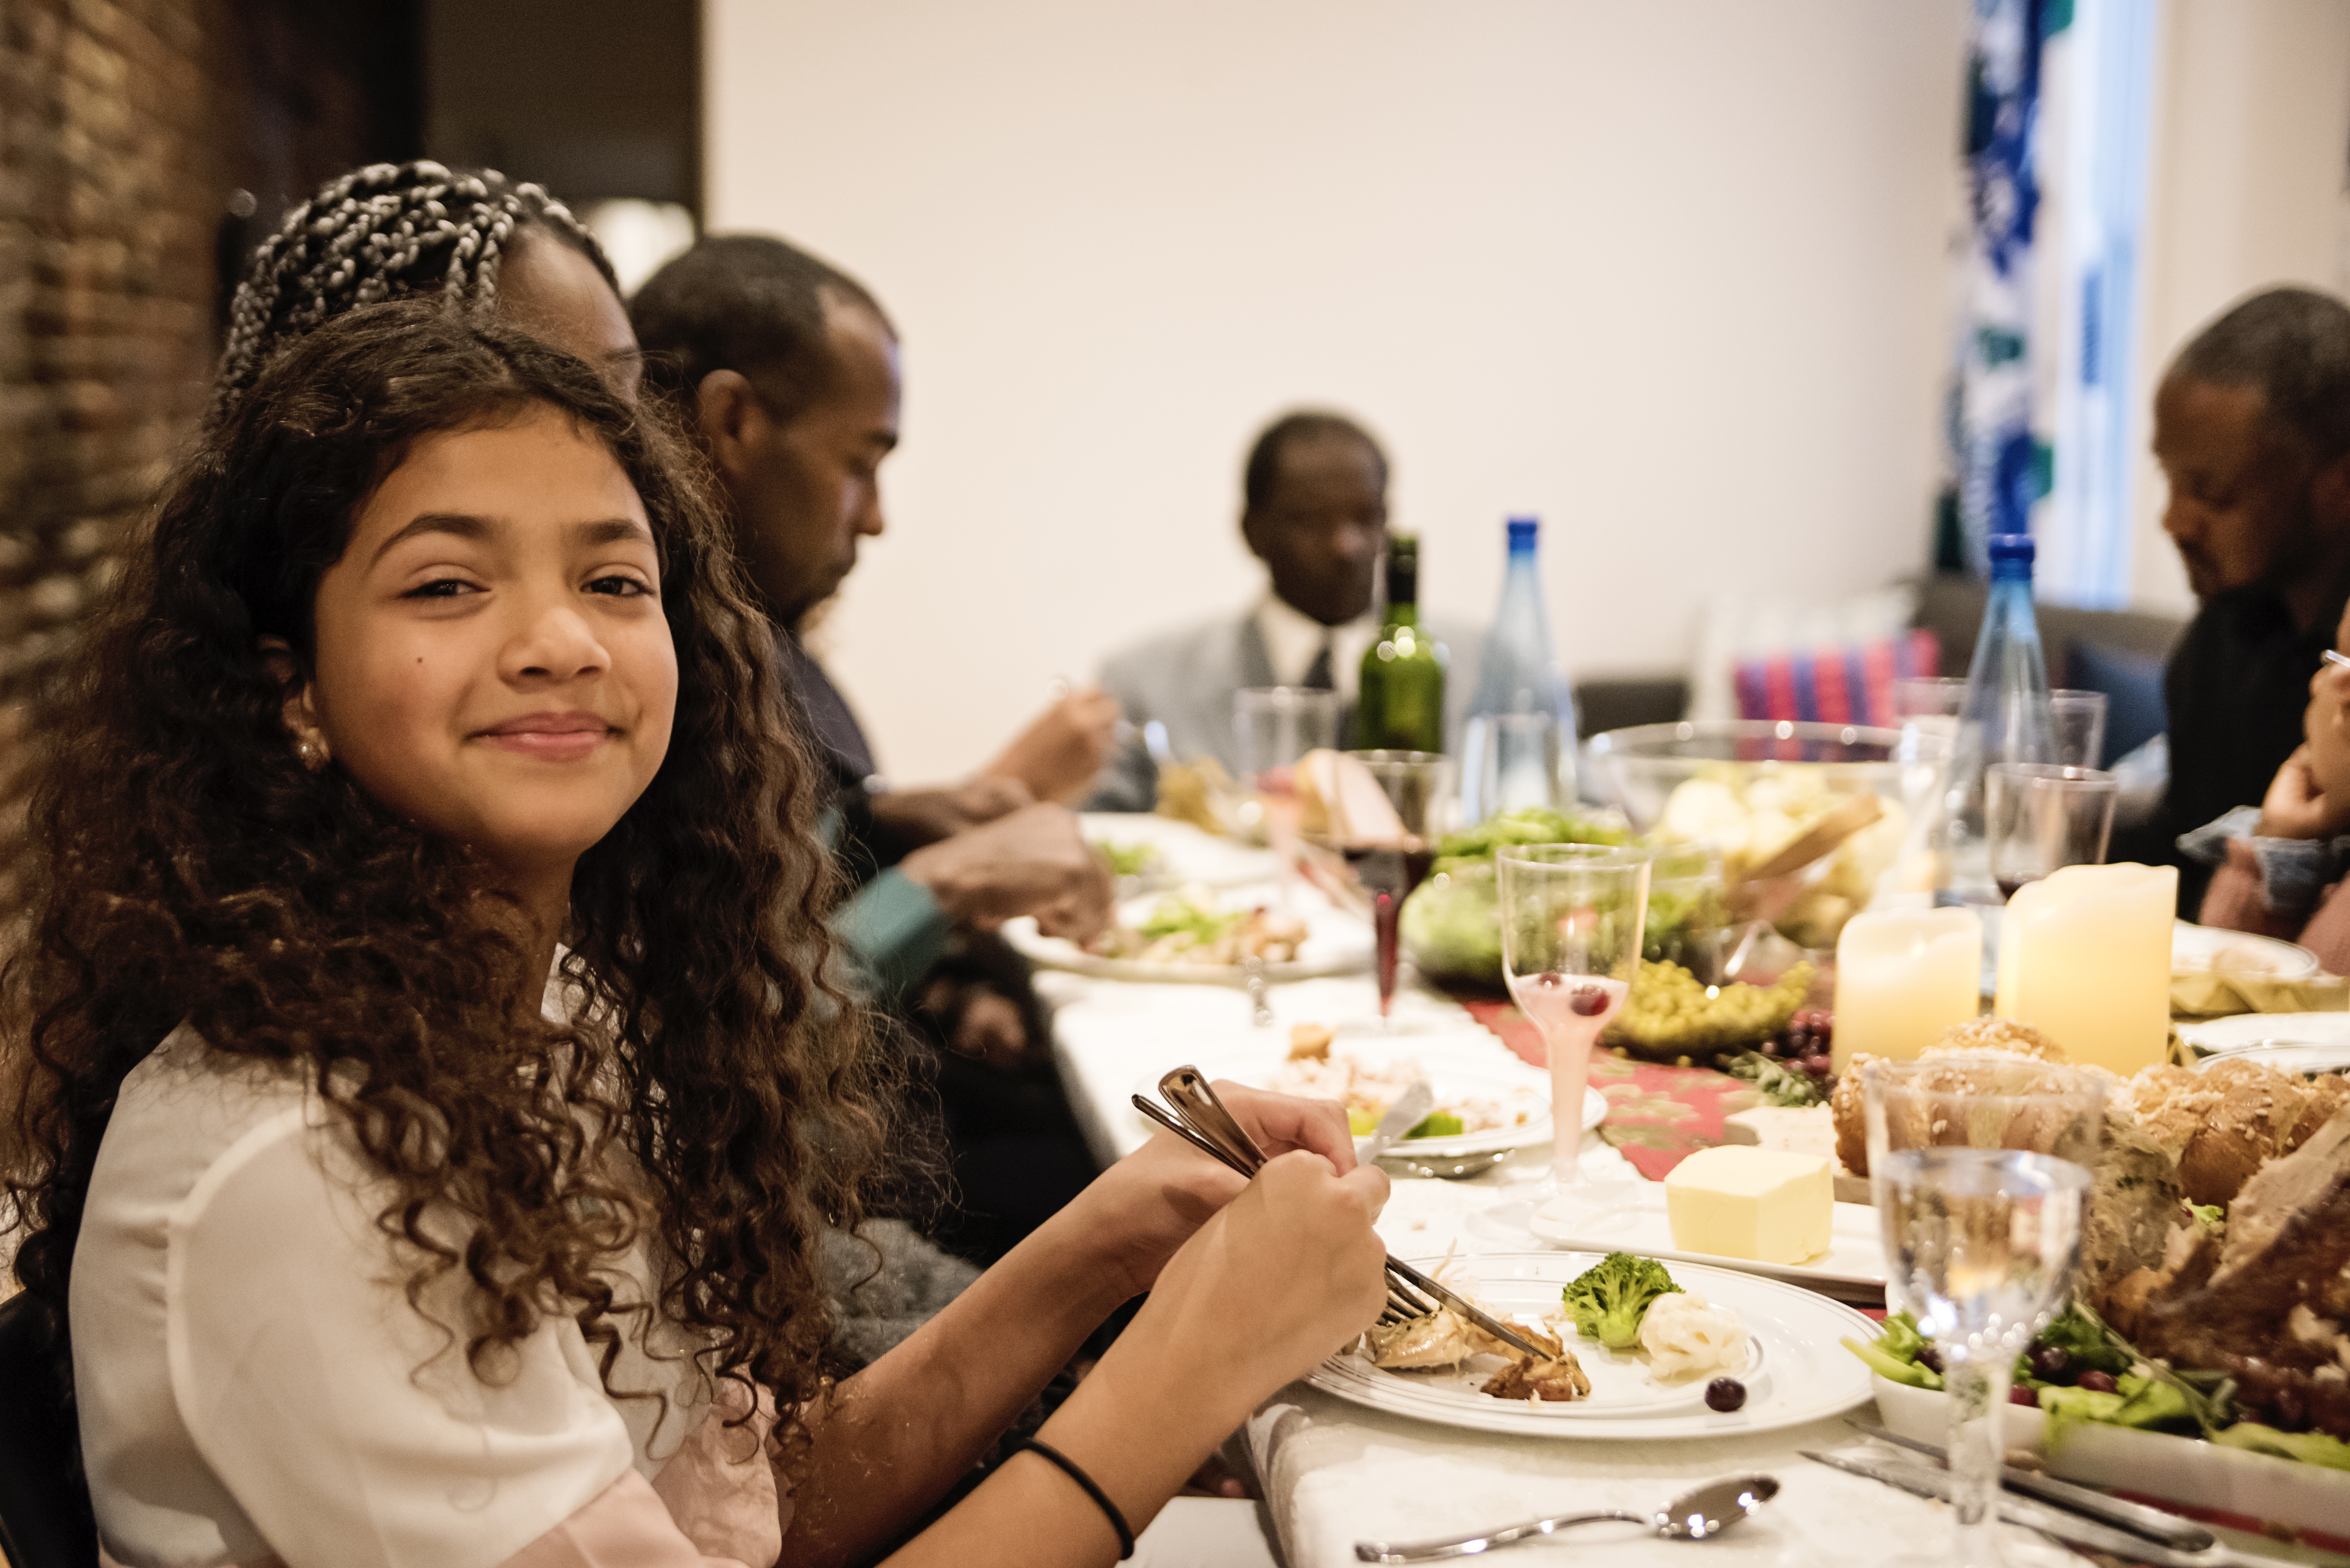 Cena de Acción de Gracias en familia | Foto: Getty Images